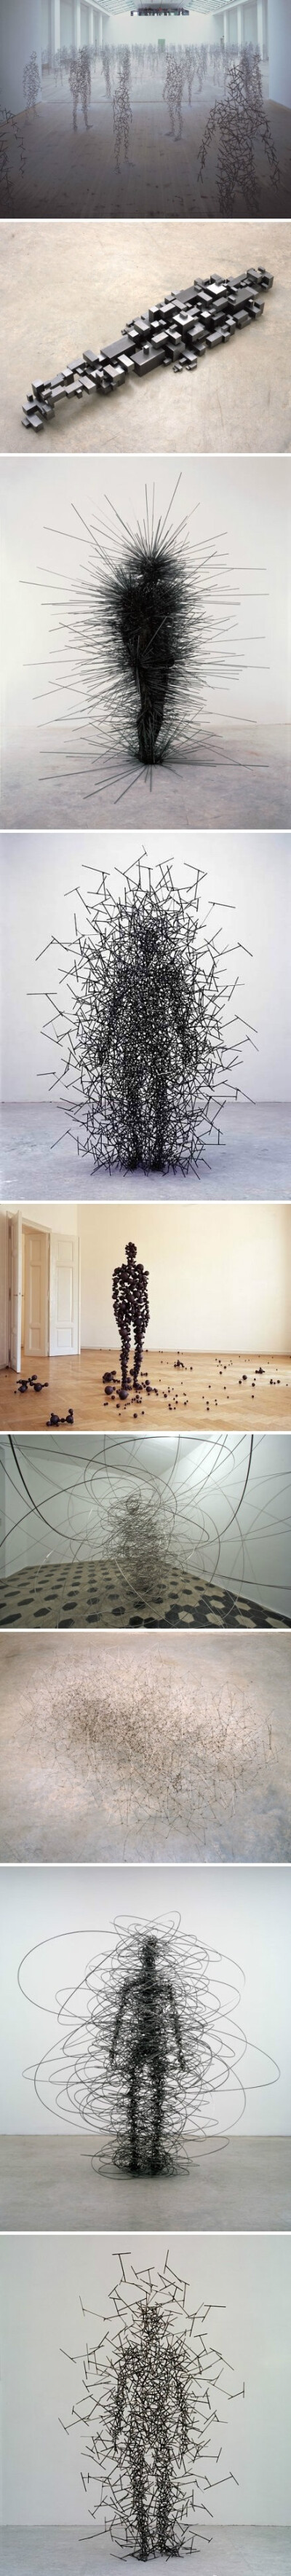 英国艺术家Antony Gormley 的雕塑装置作品